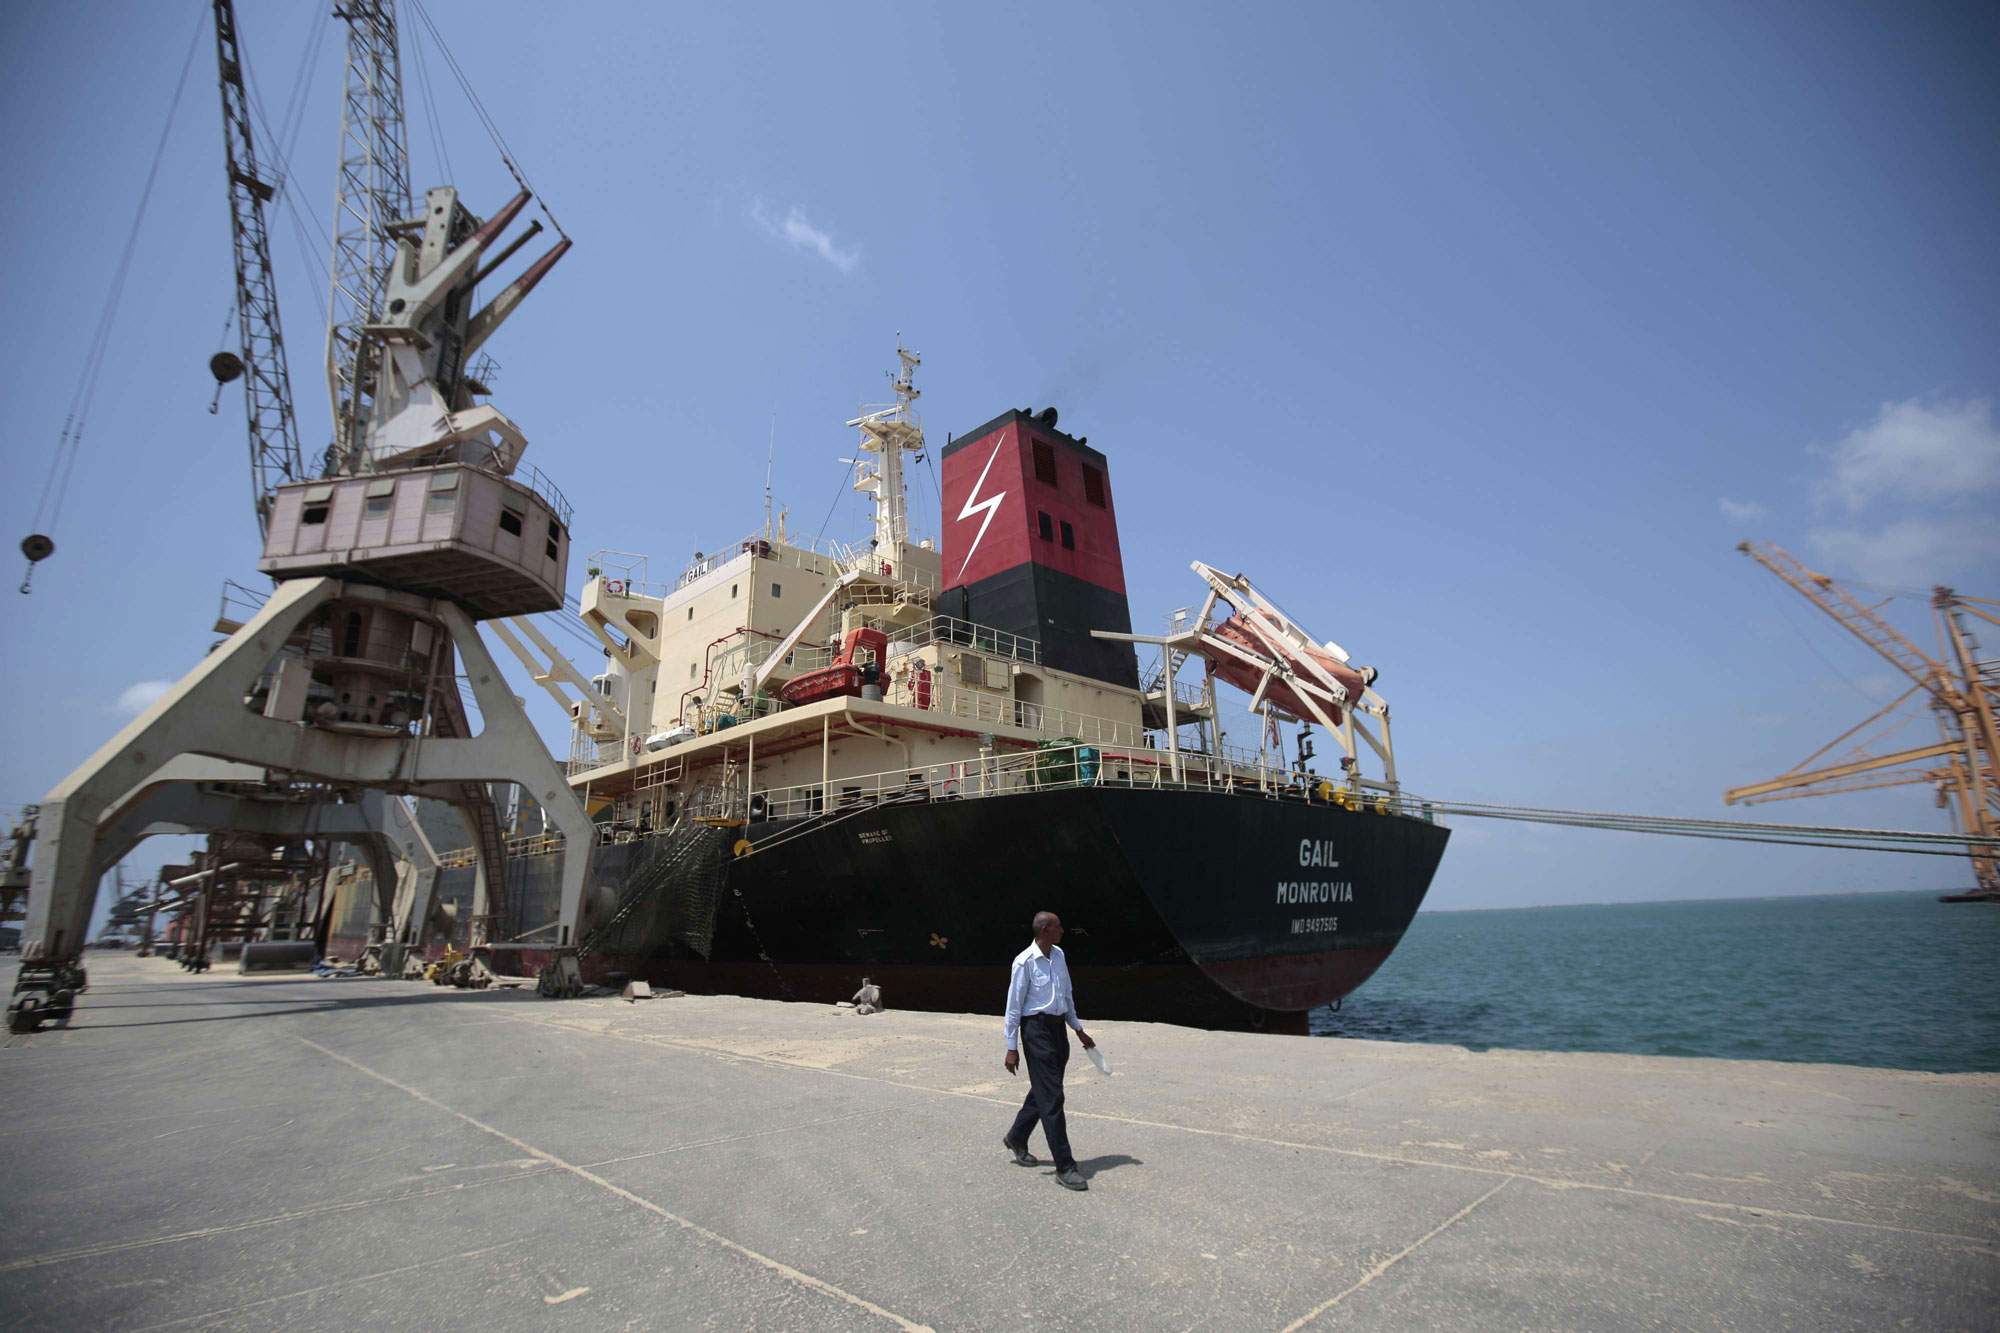 ميناء الحديدة شريان حيوي لامدادات الأسلحة الإيرانية للحوثيين